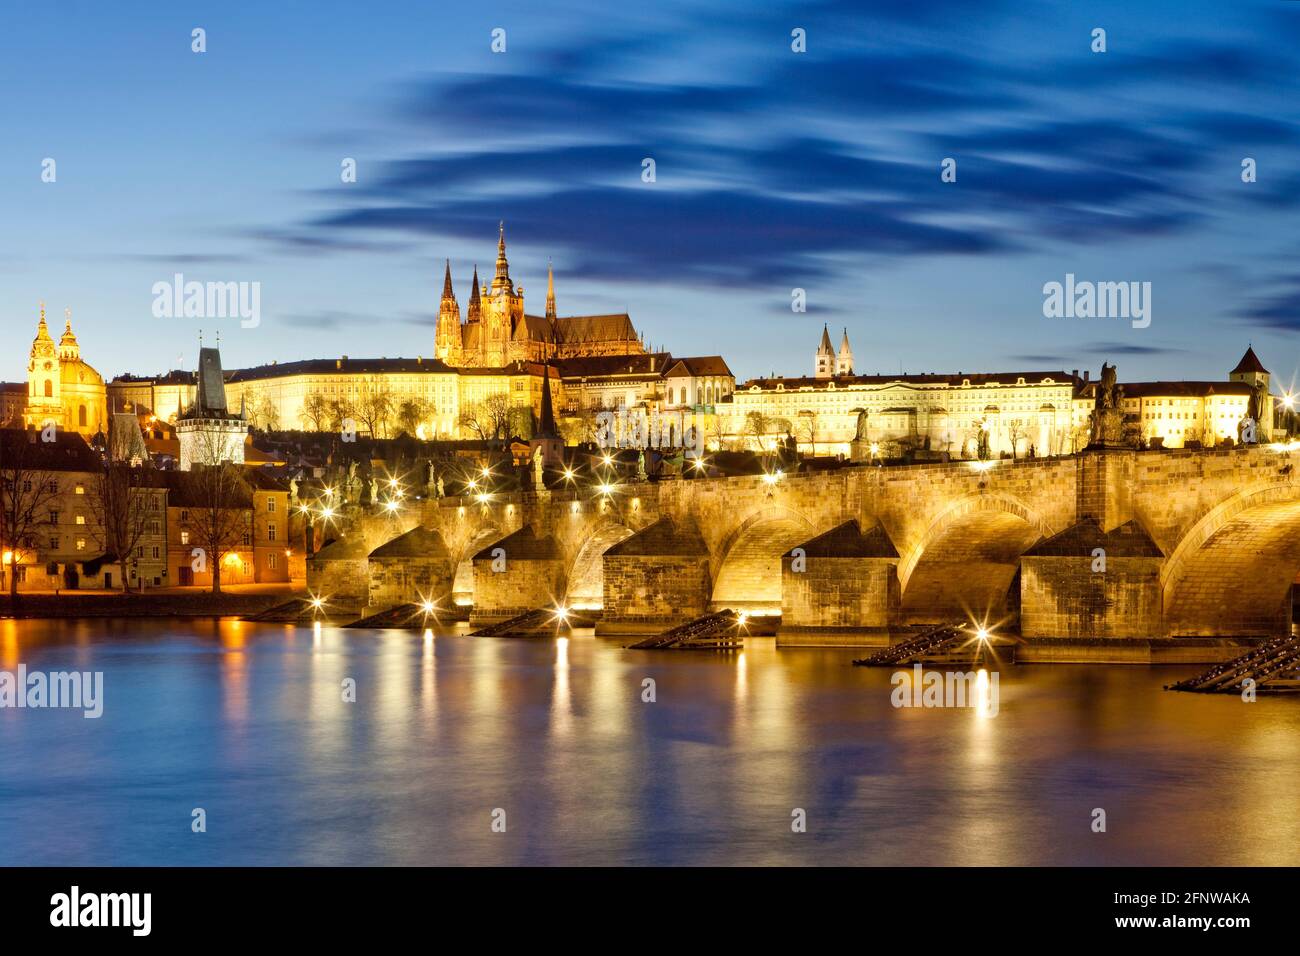 Prague, Czechia. Hradcany castle and Charles bridge at dusk. Stock Photo